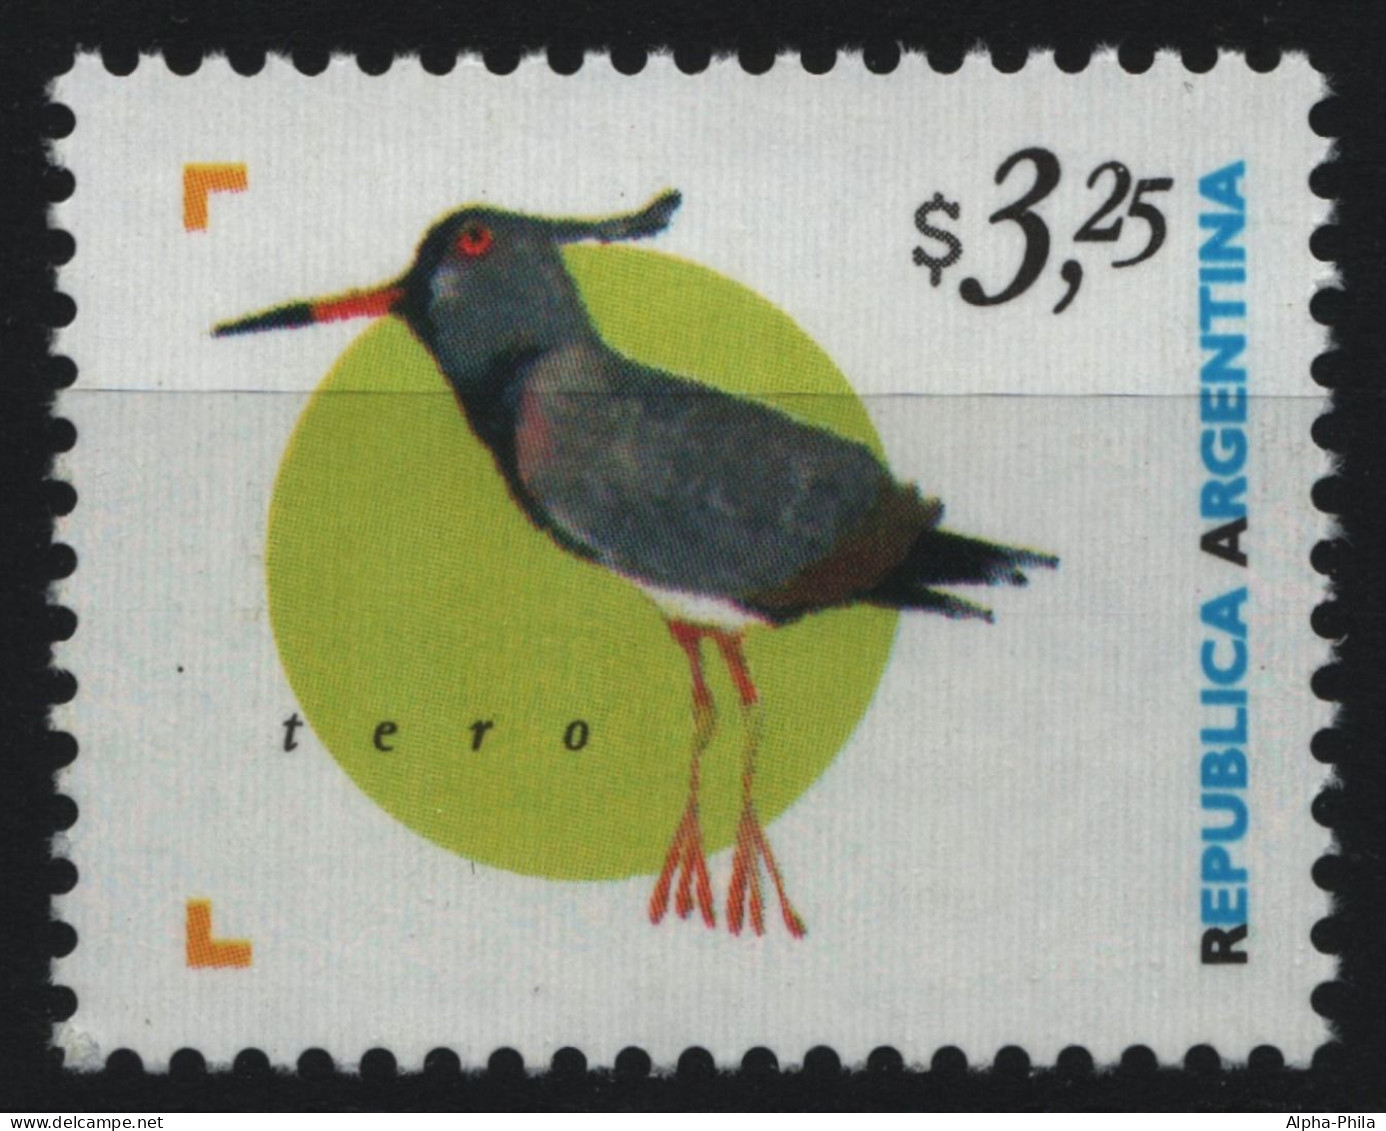 Argentinien 1998 - Mi-Nr. 2419 ** - MNH - Vögel / Birds - Nuovi